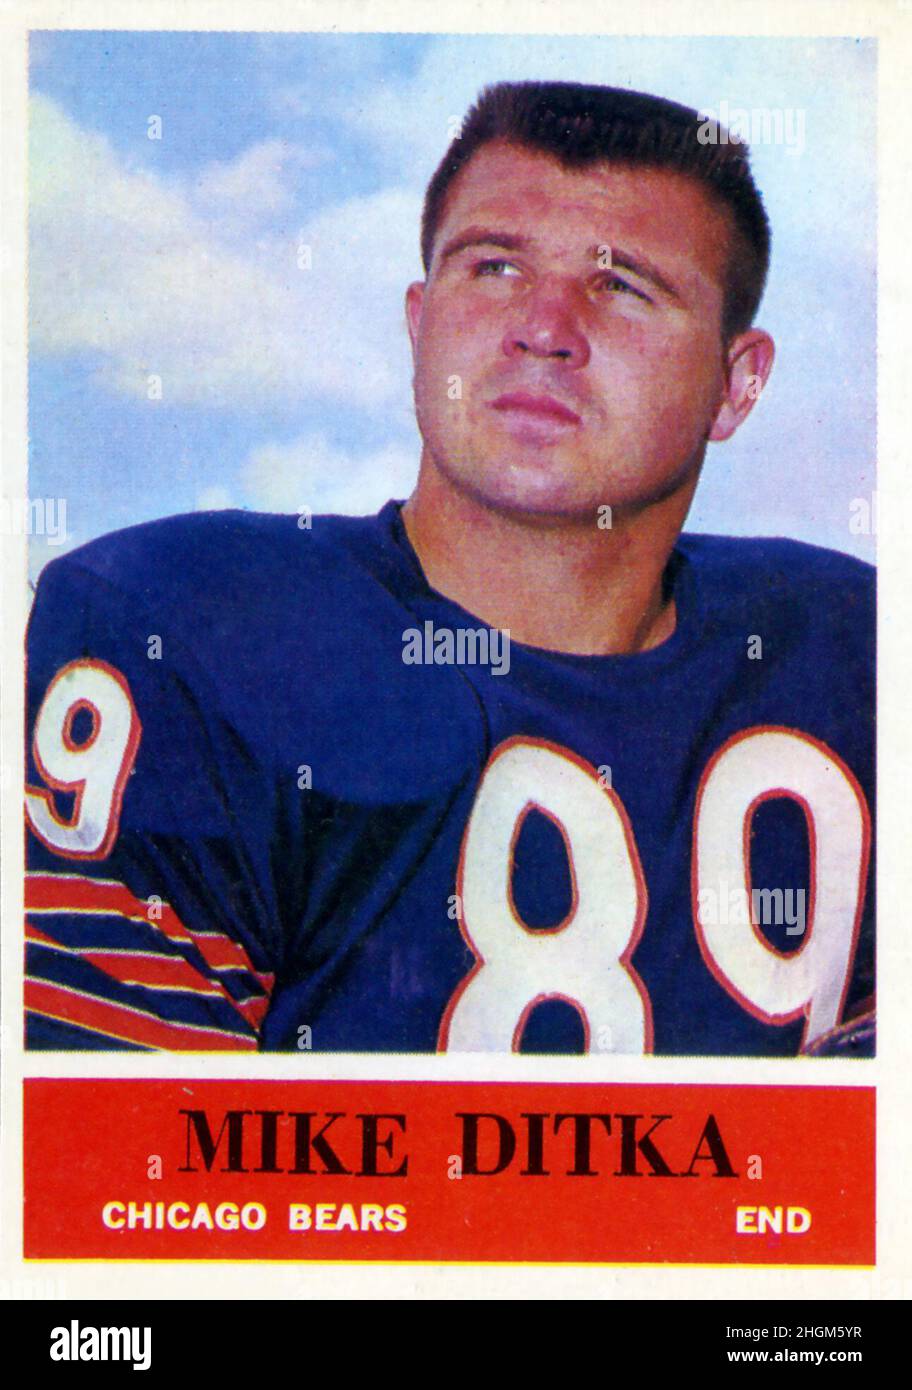 Eine Fußballkarte von Philadelphia Gum aus dem Jahr 1964, auf der Mike Ditka mit den Chicago Bears abgebildet ist. Stockfoto